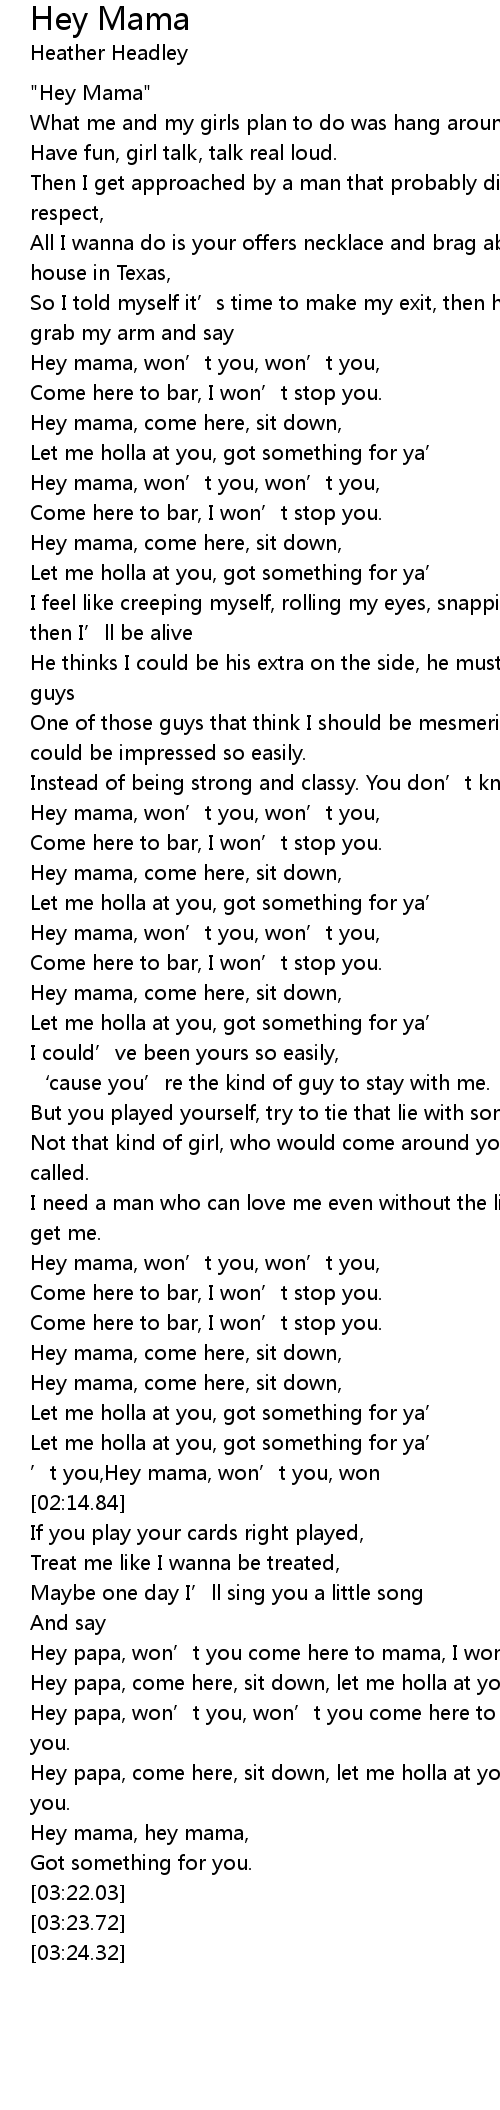 Hey mama lyrics